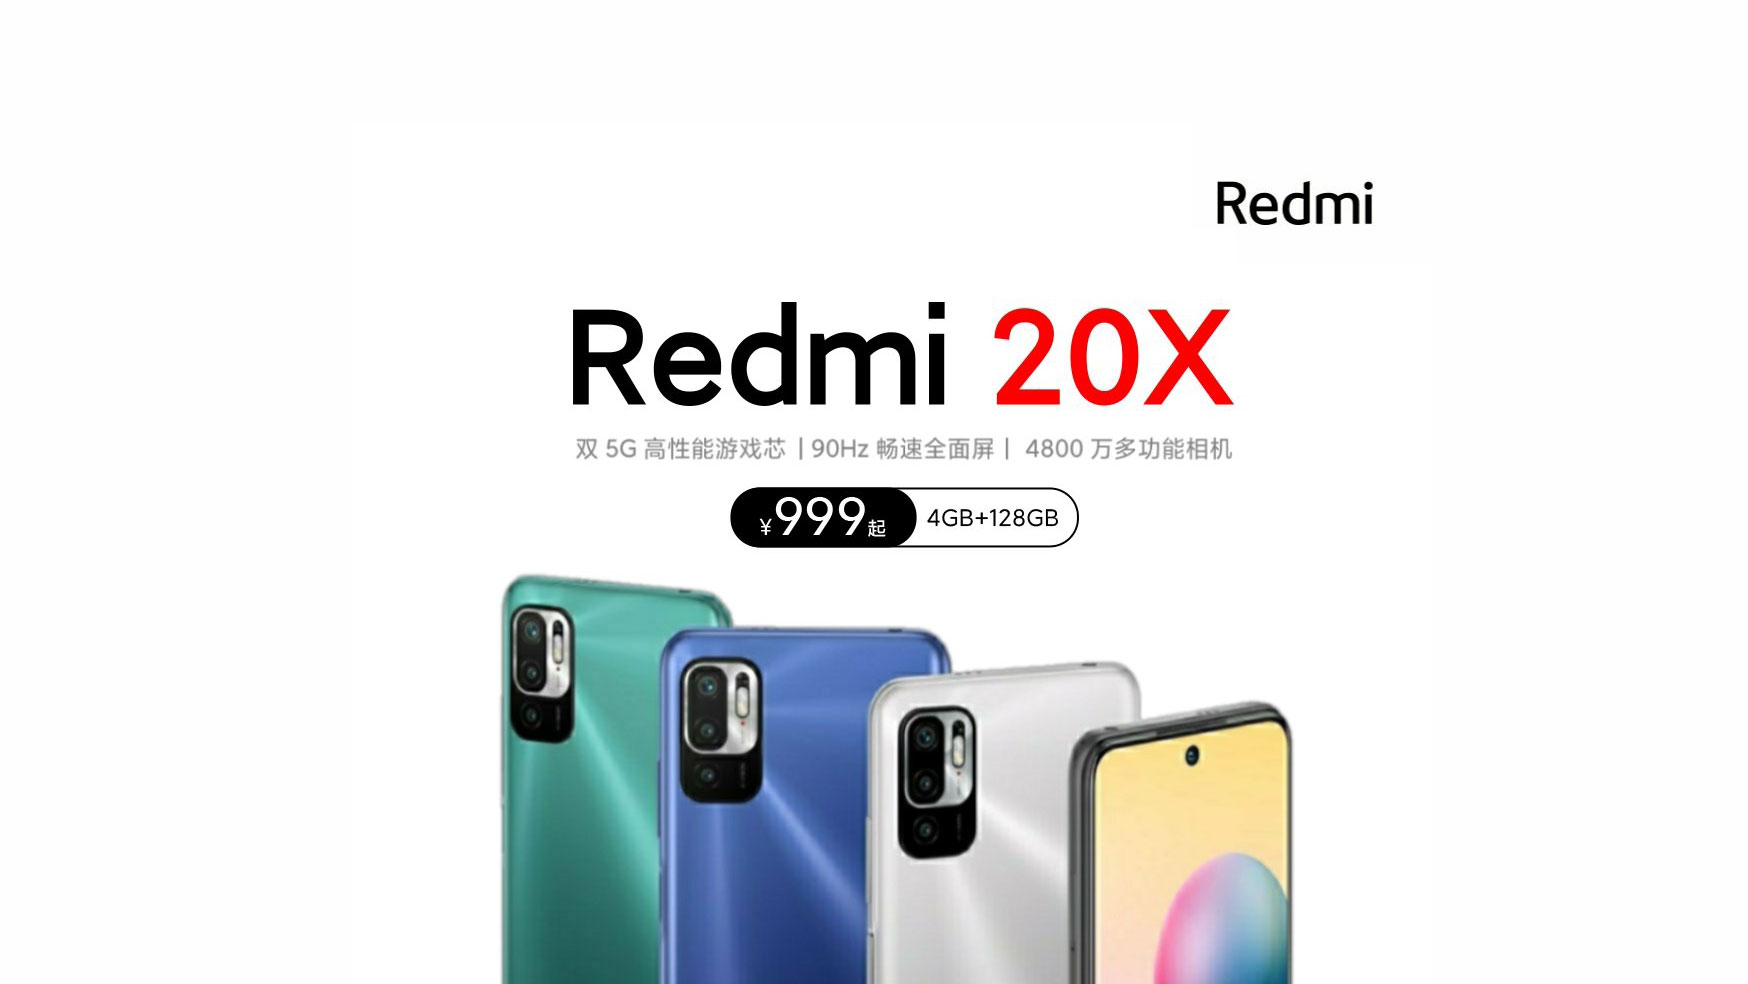 گوش ردمی ۲۰ ایکس (Redmi 20X) با پشتیبانی از 5G قیمت ۱۵۲ دلار در راه است